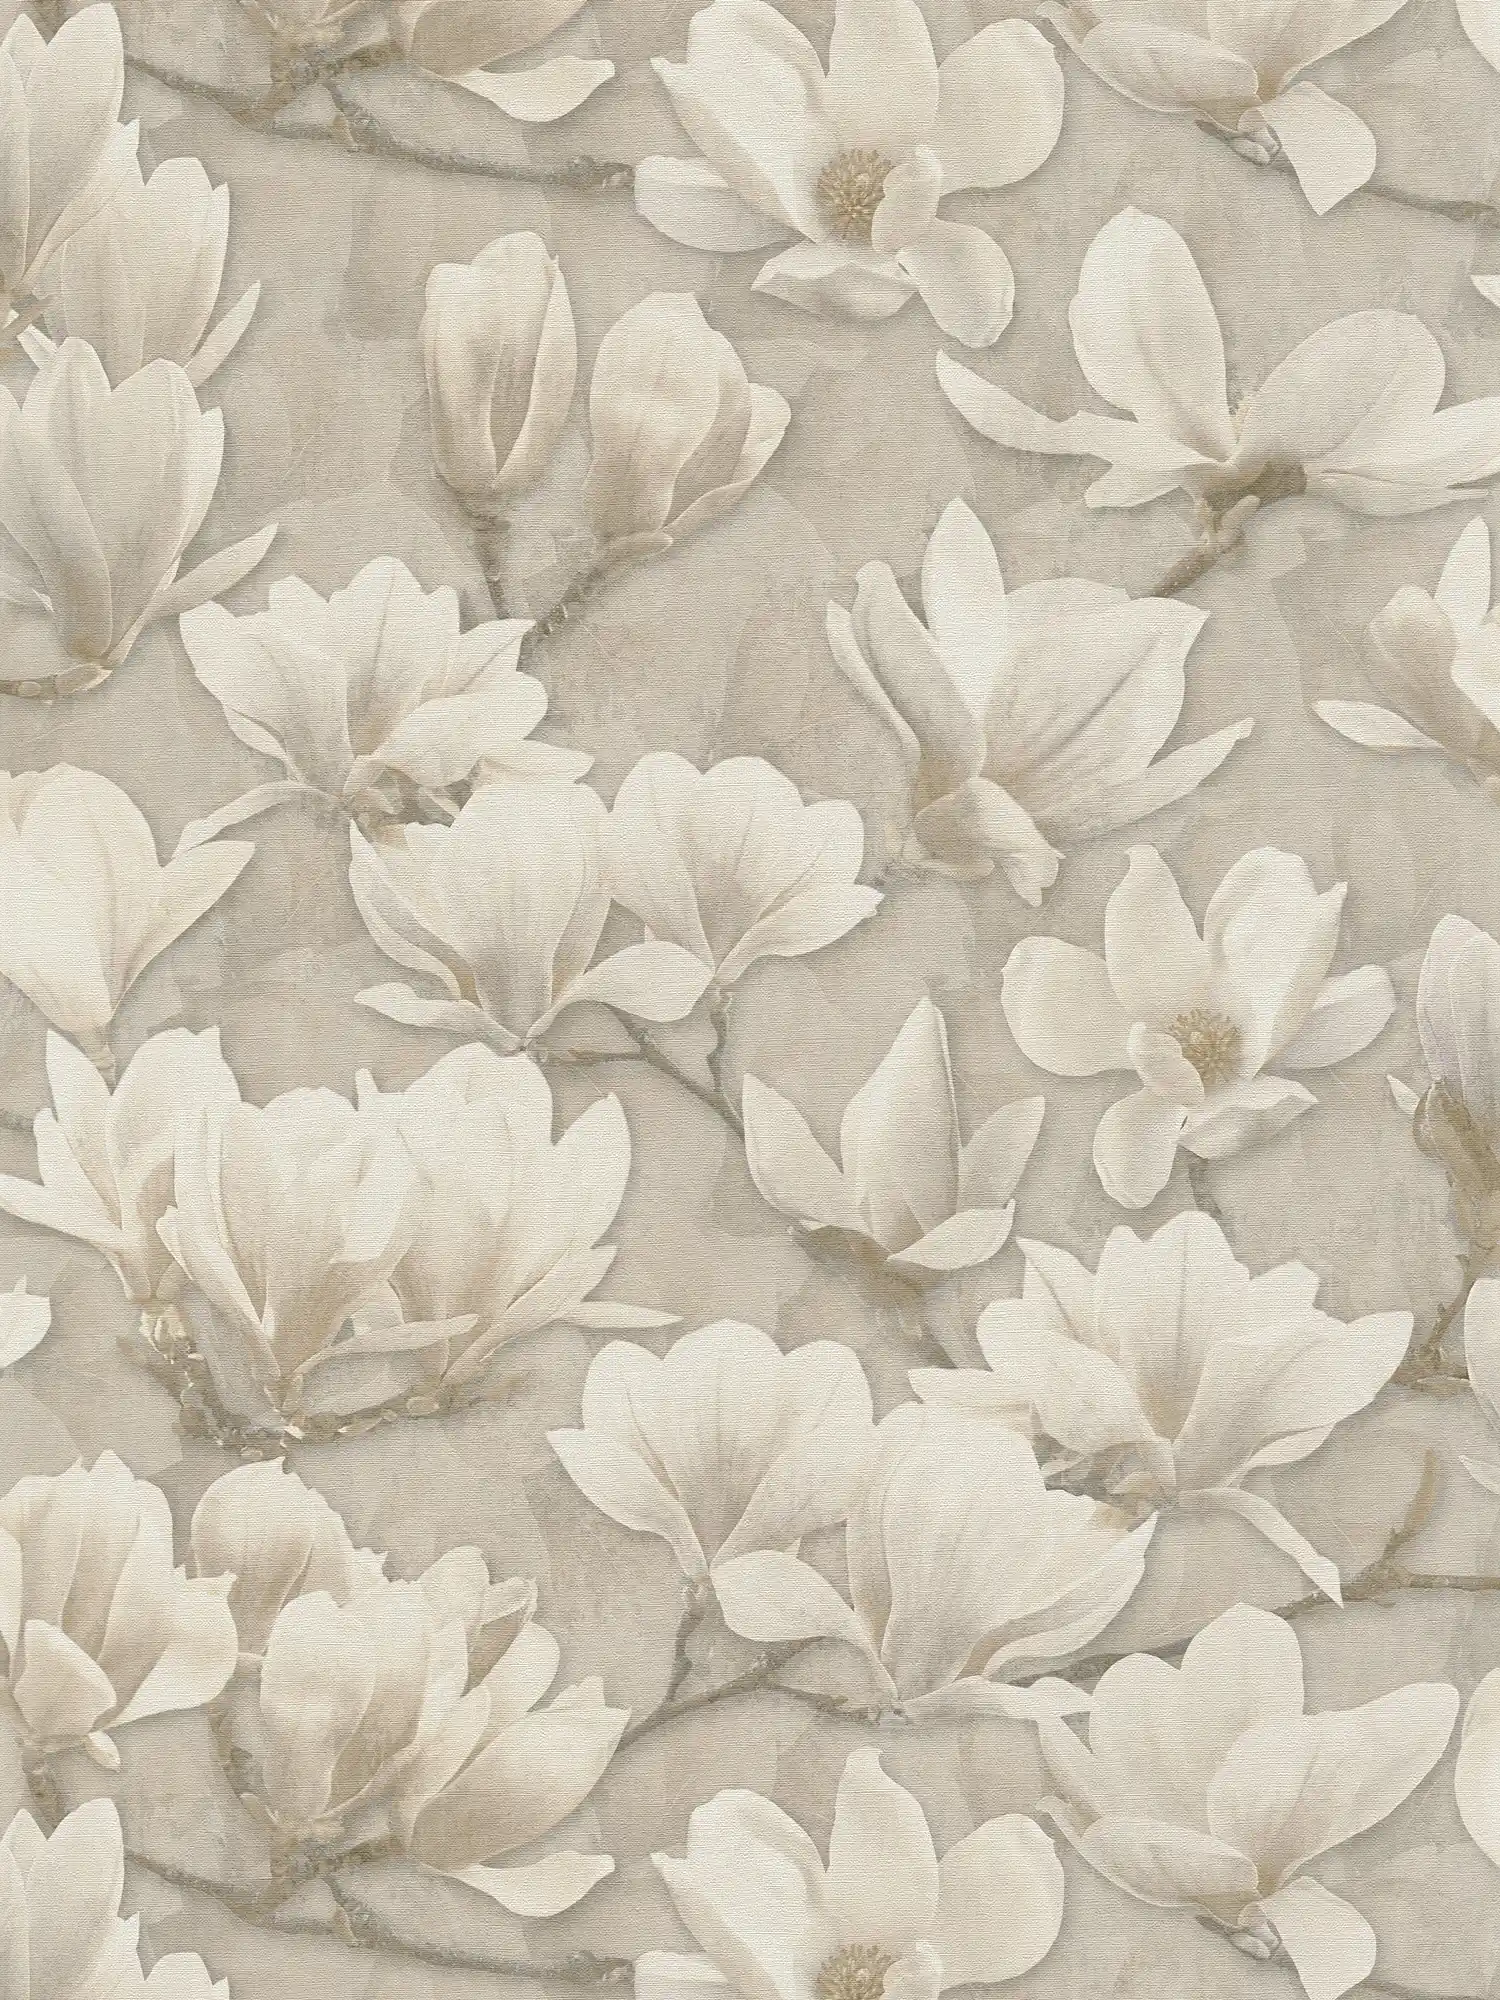 Vliestapete mit all over Magnolien Blumenmotiv Print – Beige, Creme, Weiß
